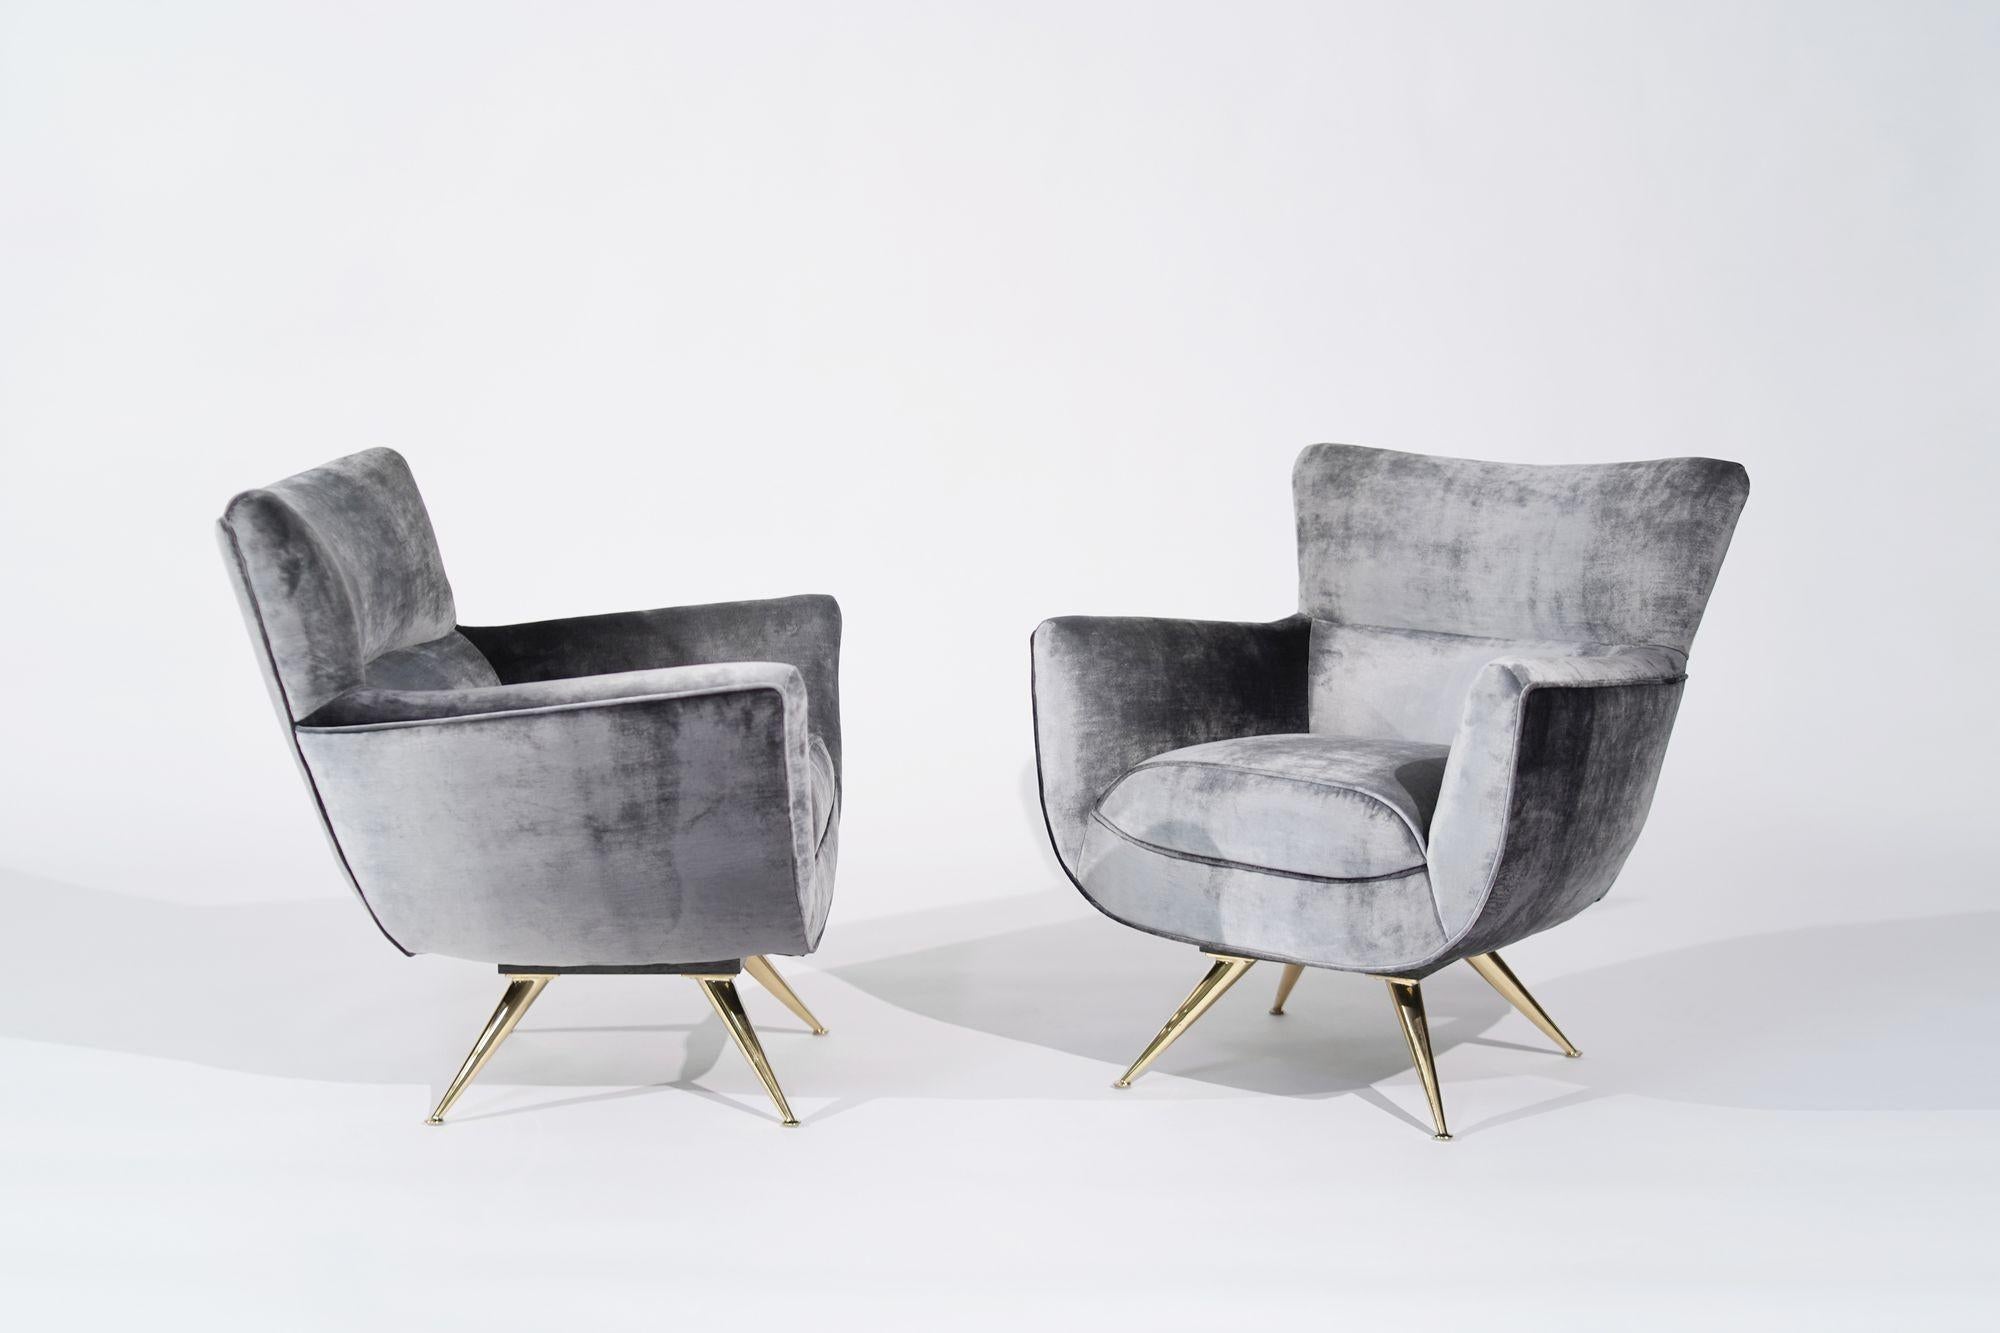 Une paire de chaises pivotantes Henry Glass méticuleusement restaurée, un mélange captivant de charme des années 1950 et d'élégance contemporaine. Tapissées de velours argenté vieilli, ces chaises sont dotées de pieds angulaires nouvellement plaqués